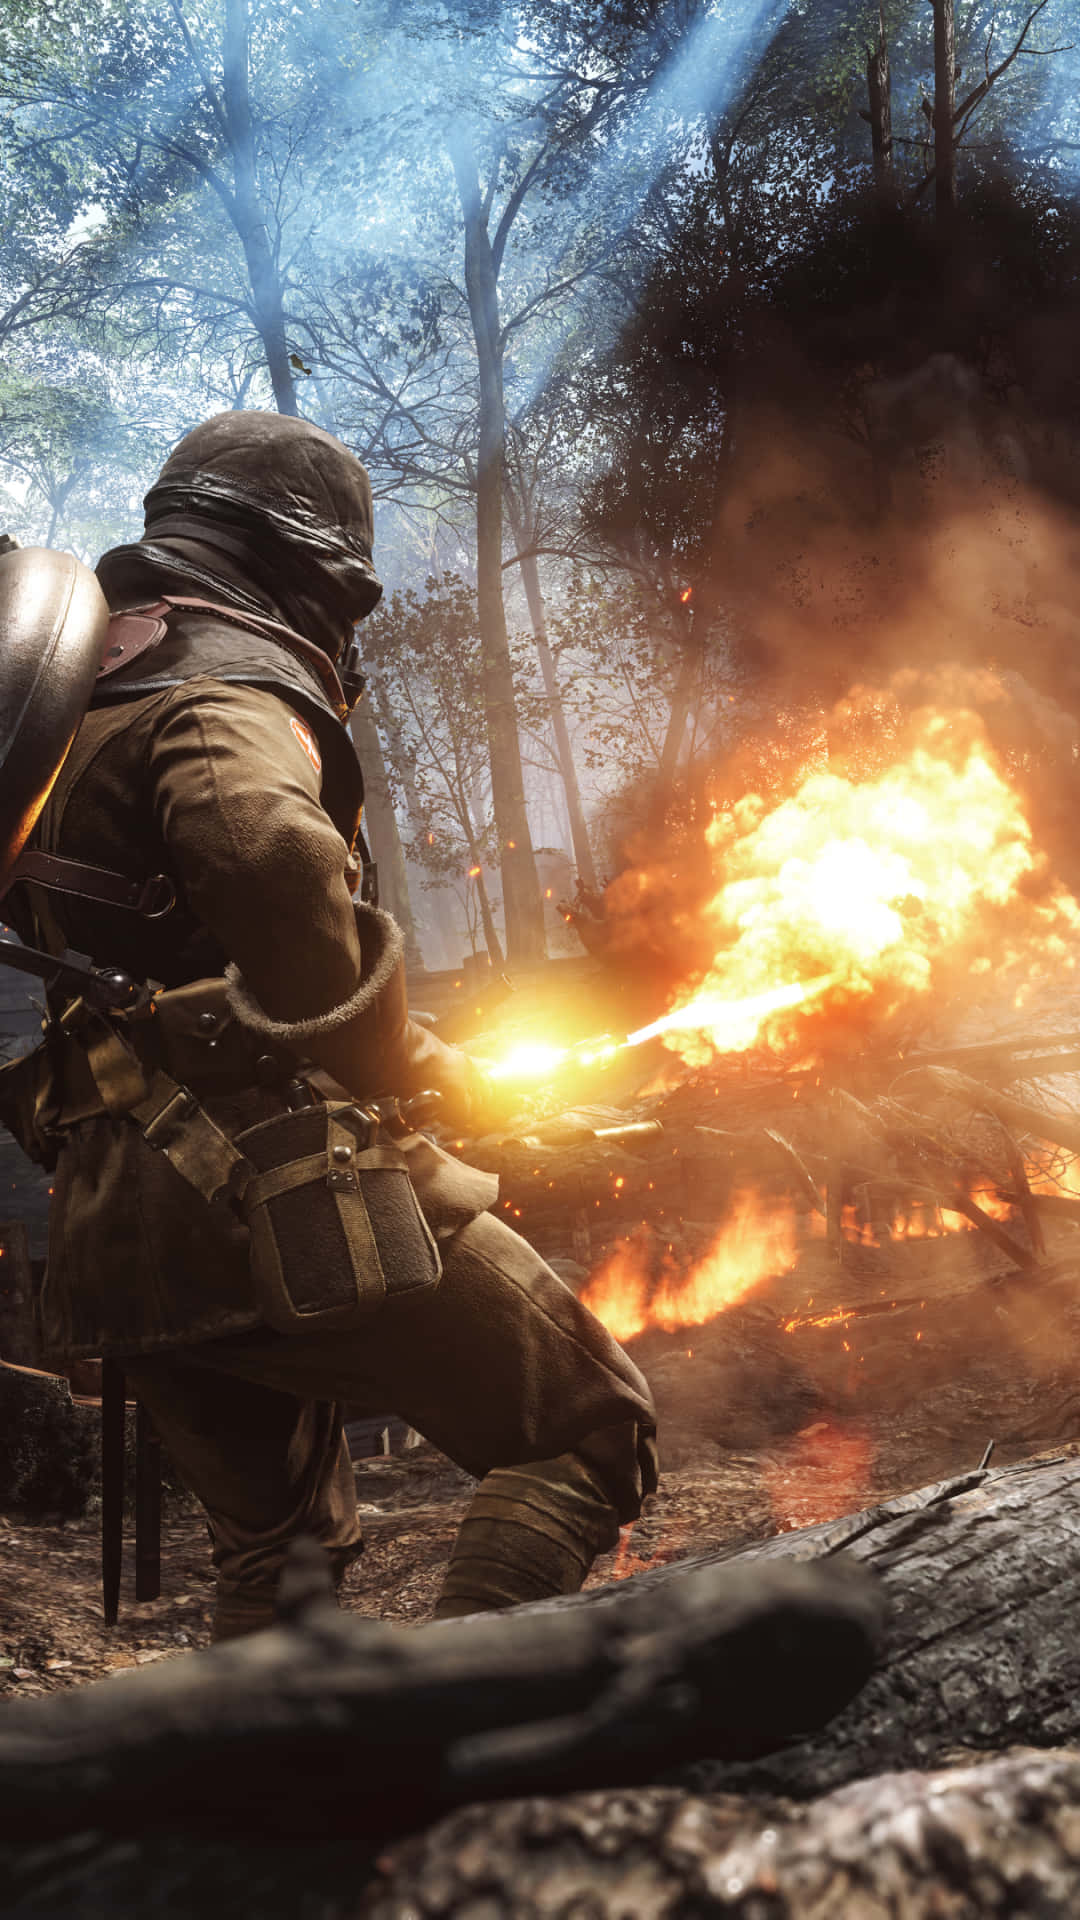 Pixel3xl Hintergrundbild Soldat Mit Einem Flammenwerfer - Battlefield 1